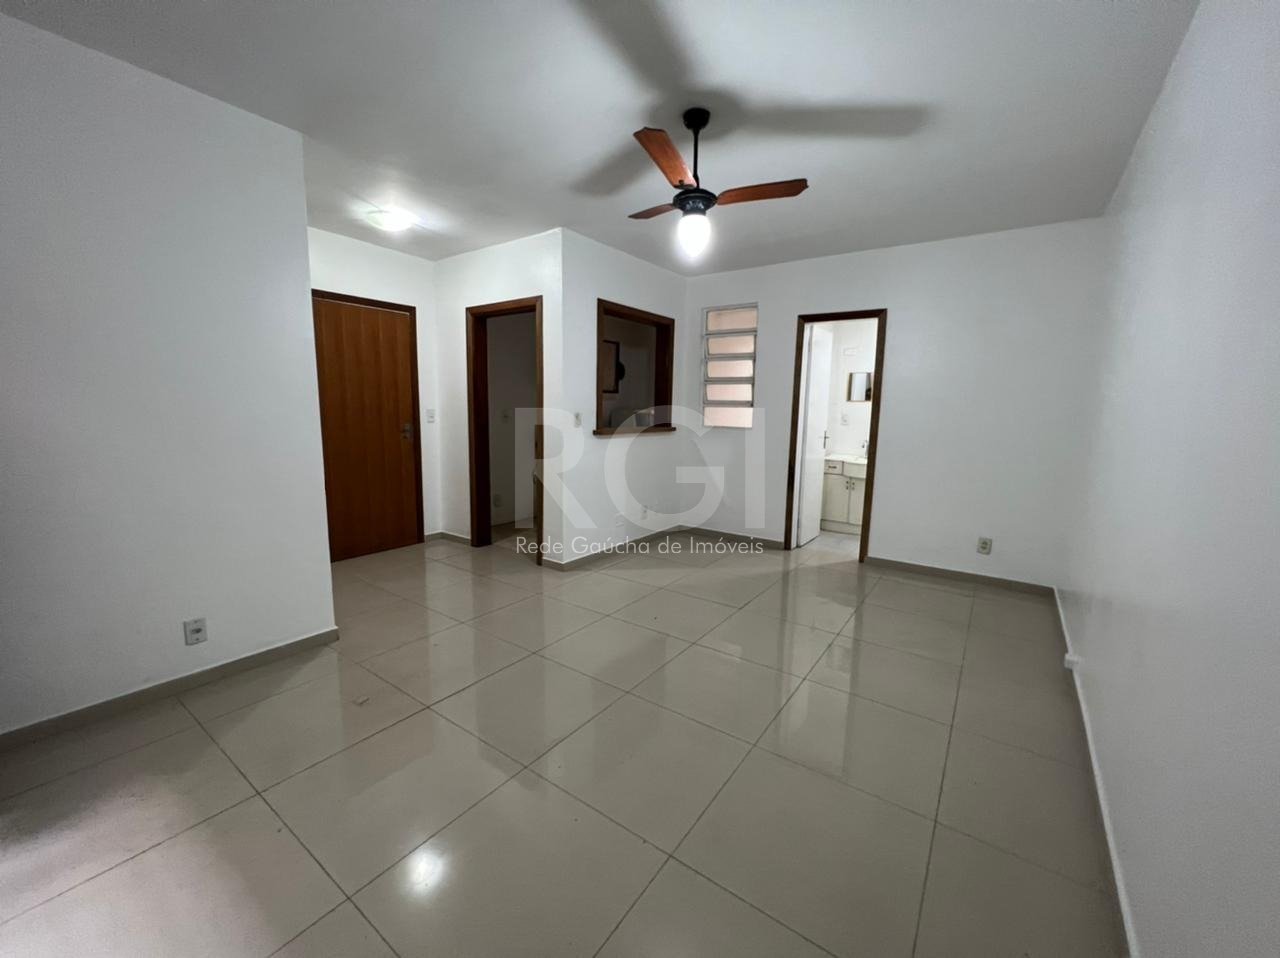 Apartamento com 31m², 1 dormitório no bairro Petrópolis em Porto Alegre para Comprar